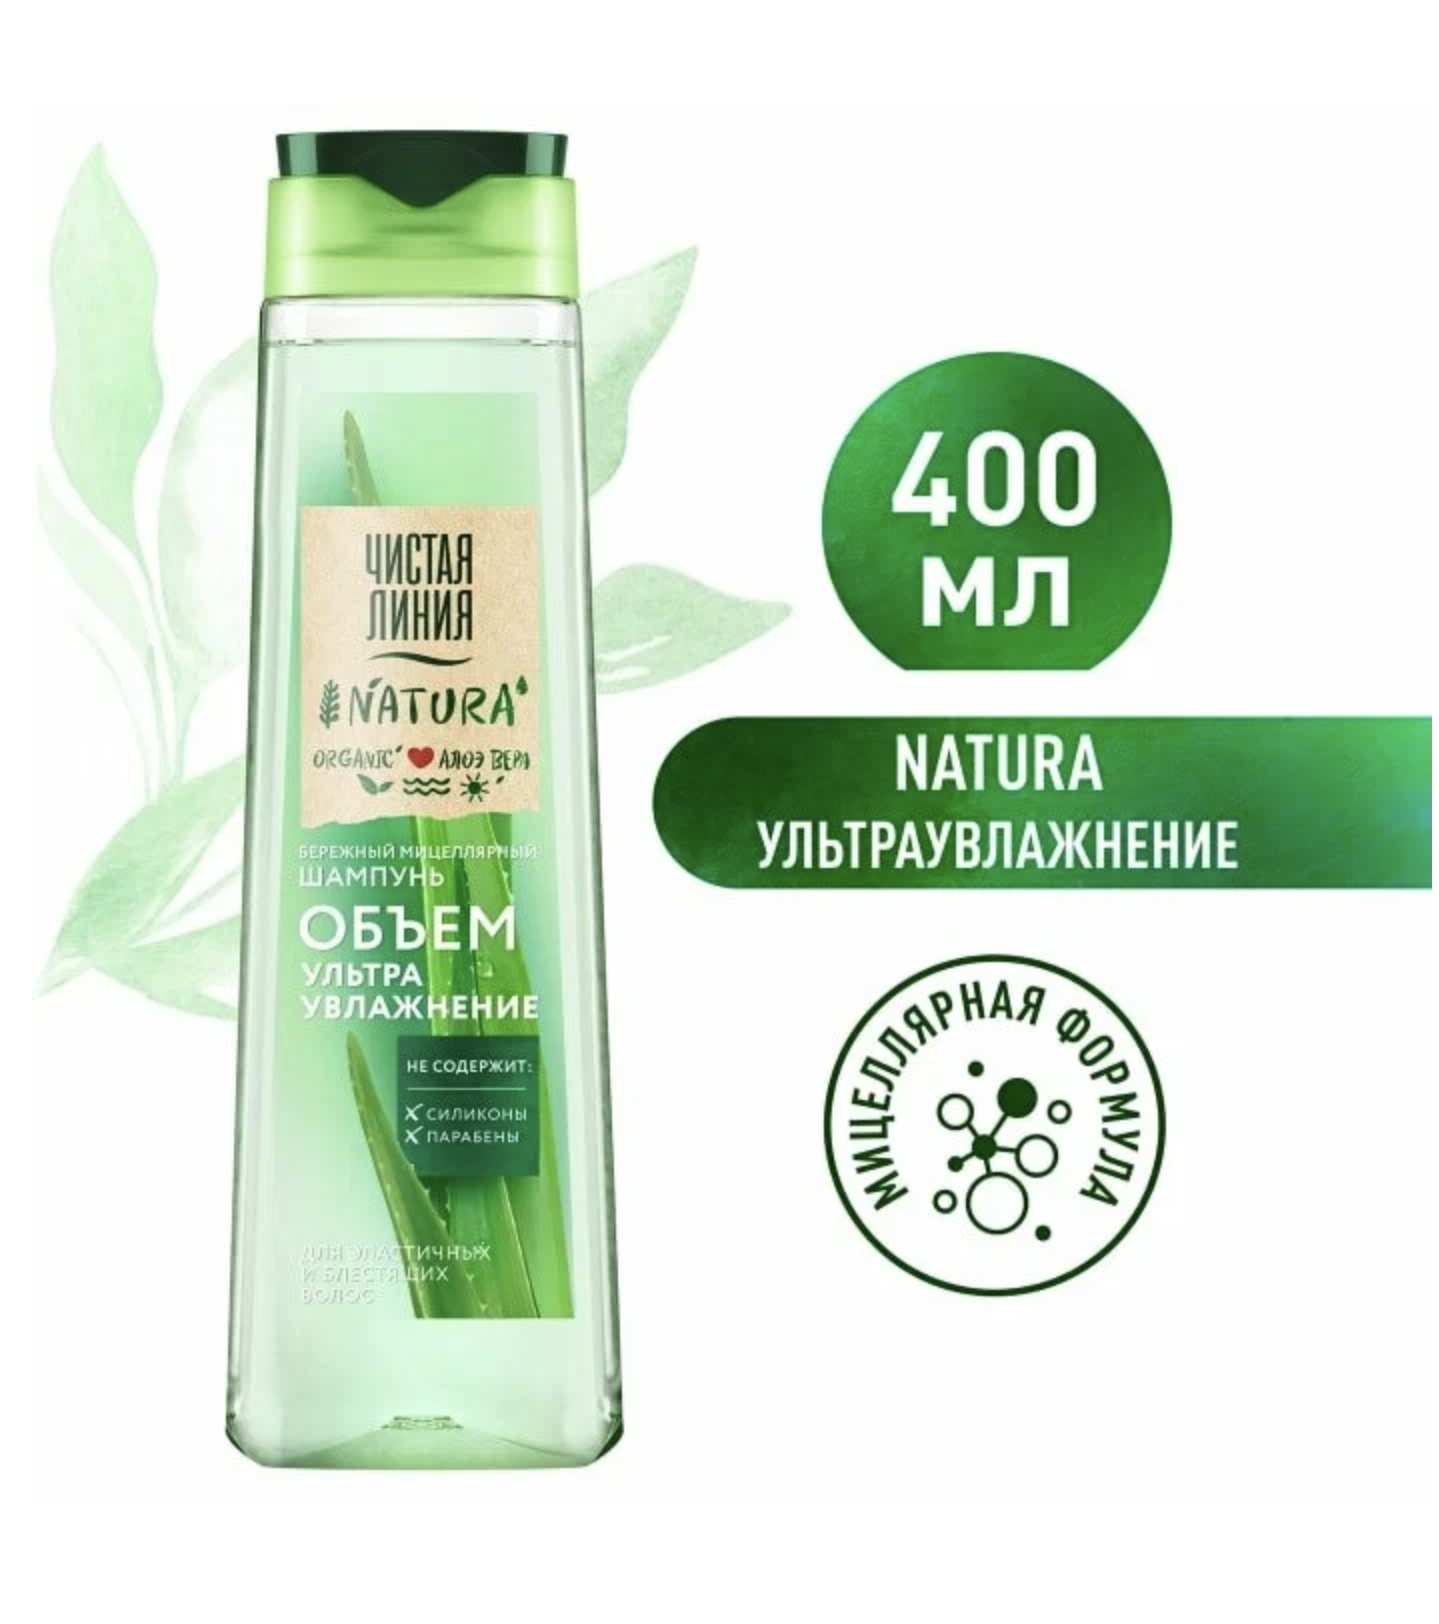    Natura Organic -         400 